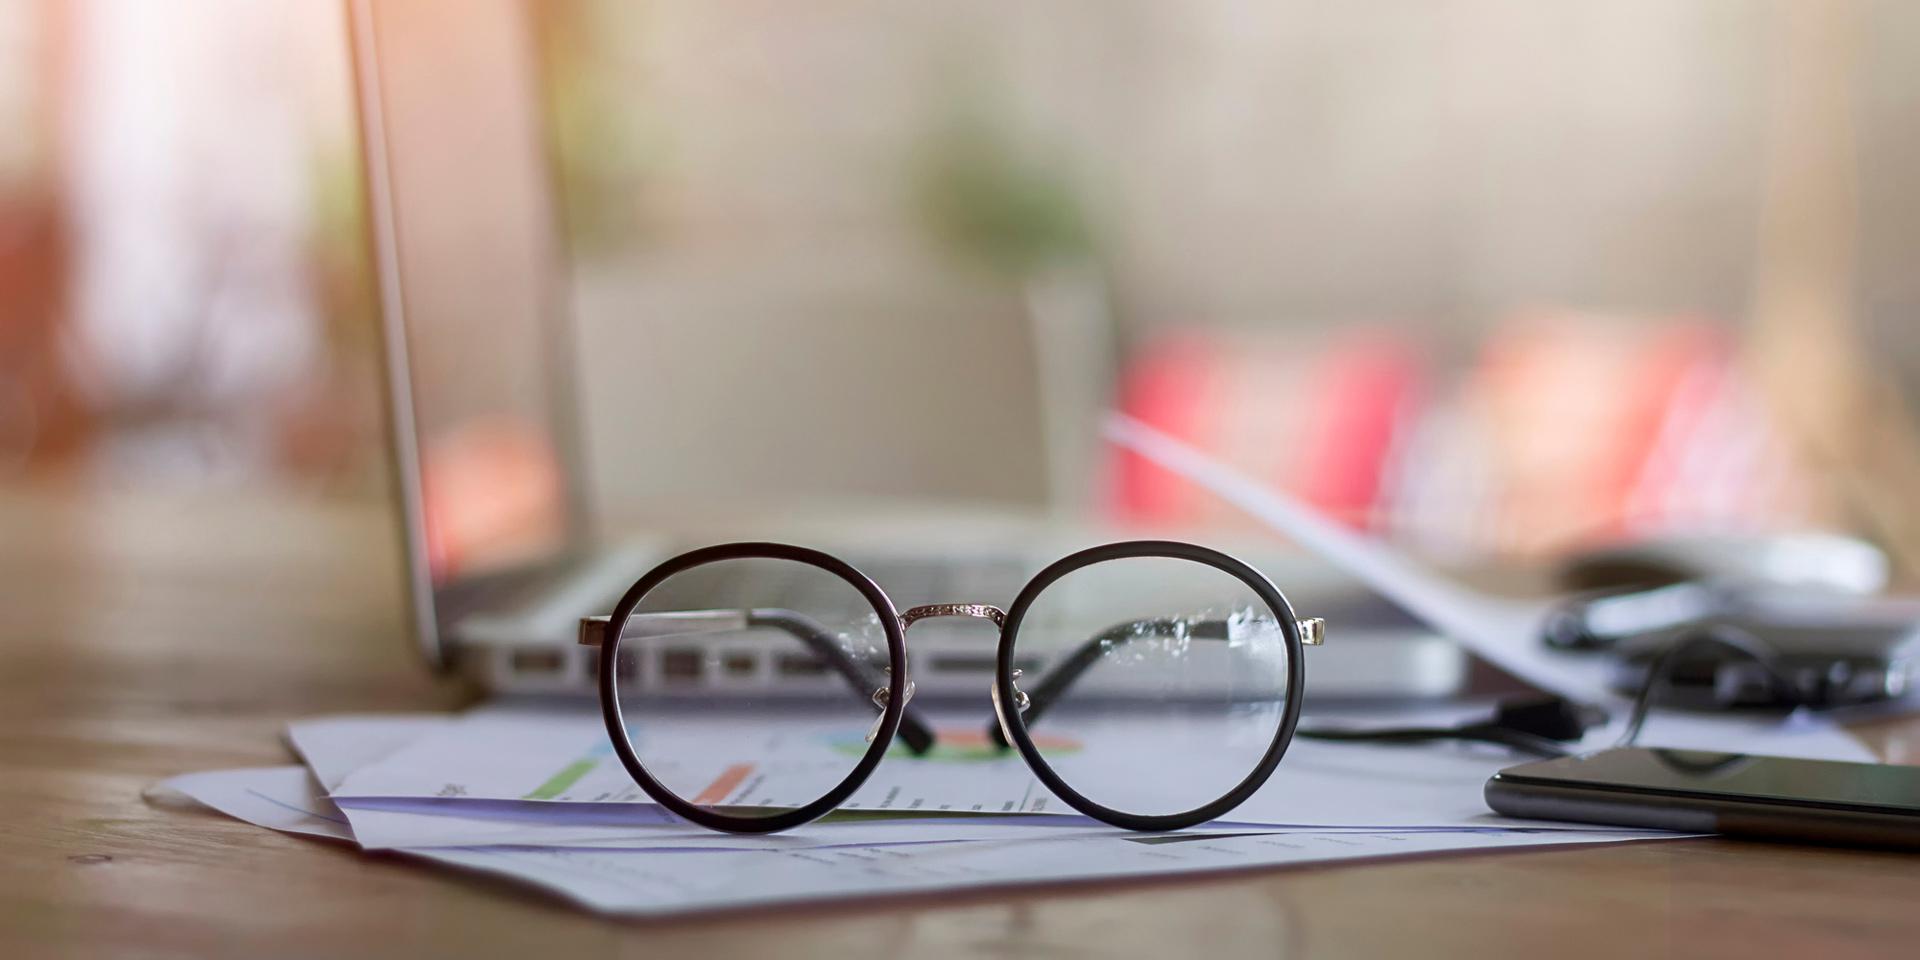 Brillen für Manager – Brillenglas und Brillenfassung auf Spitzenniveau mit hohem individuellem Sehkomfort